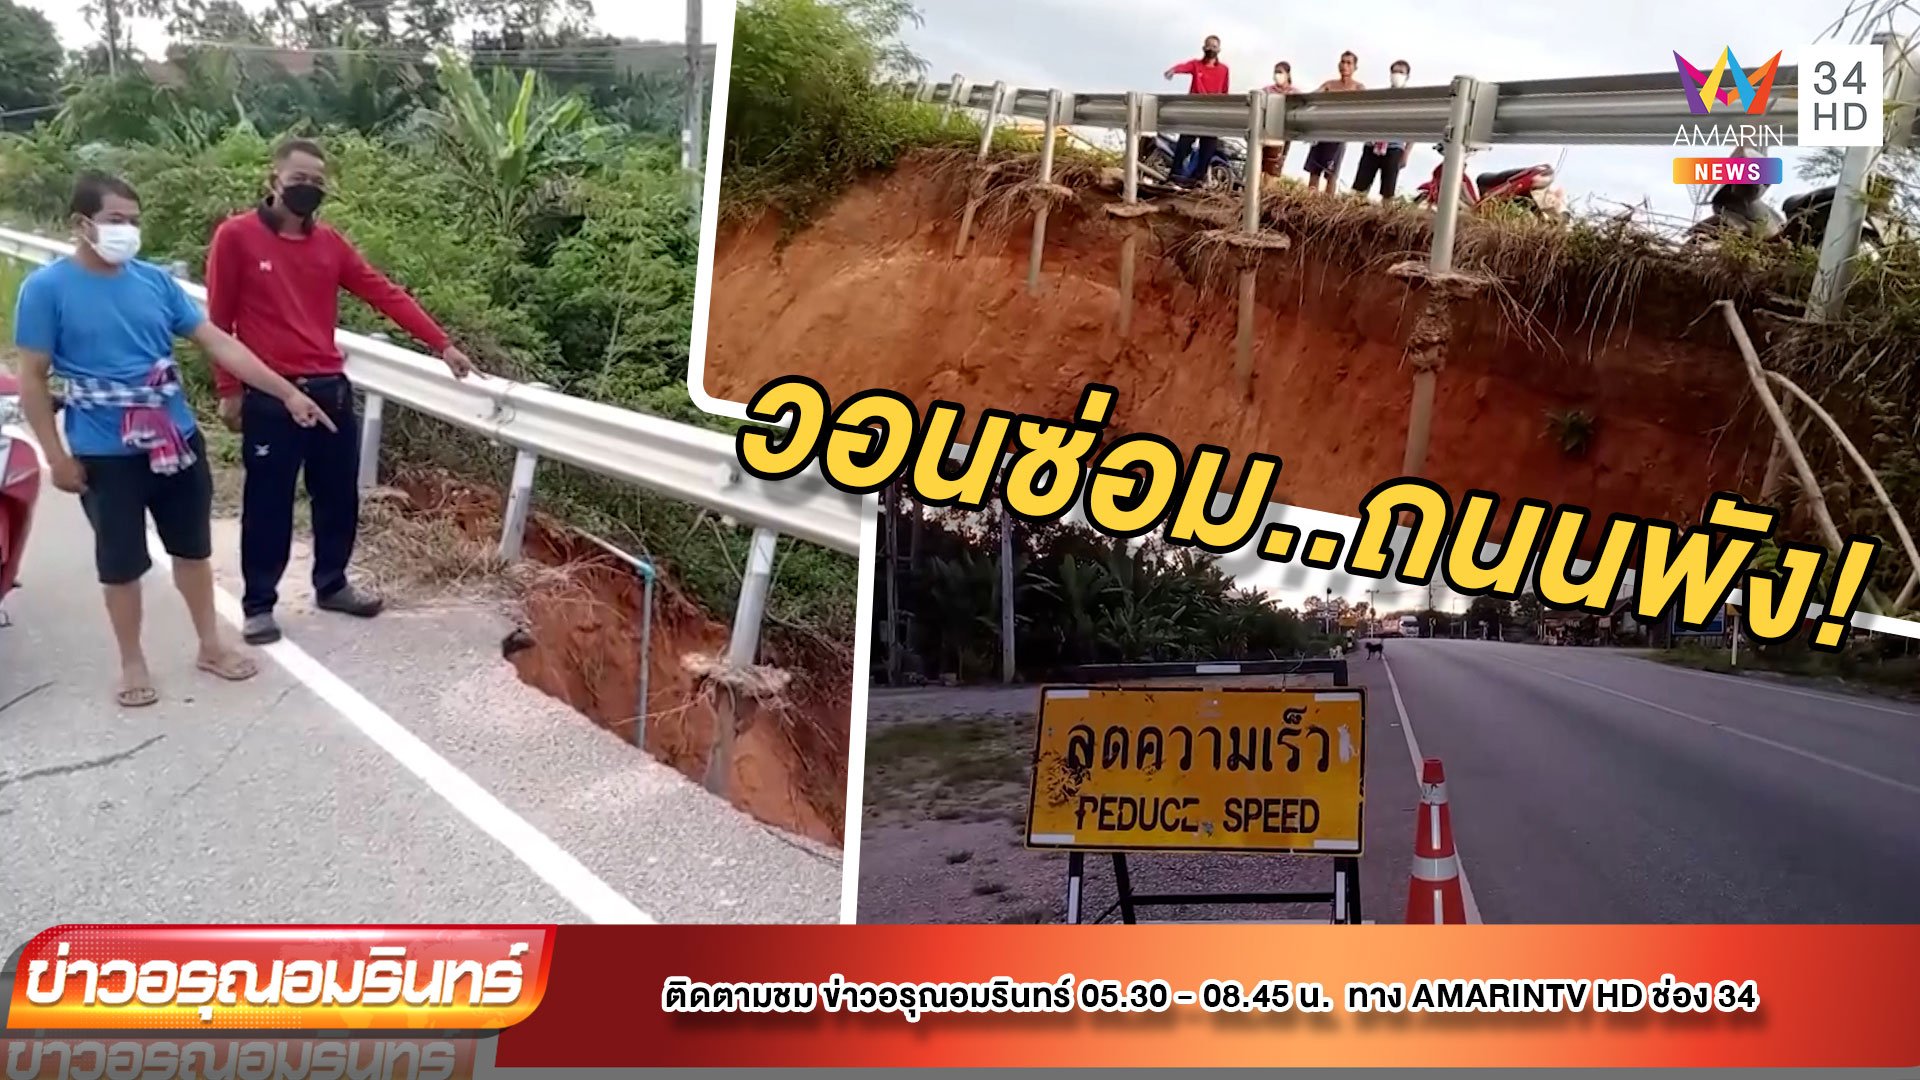 ชาวบ้านวอนซ่อมถนนพังนานกว่า 2 ปี ไร้การเหลียวแล แก้ไข | ข่าวอรุณอมรินทร์ | 16 ก.พ. 65 | AMARIN TVHD34